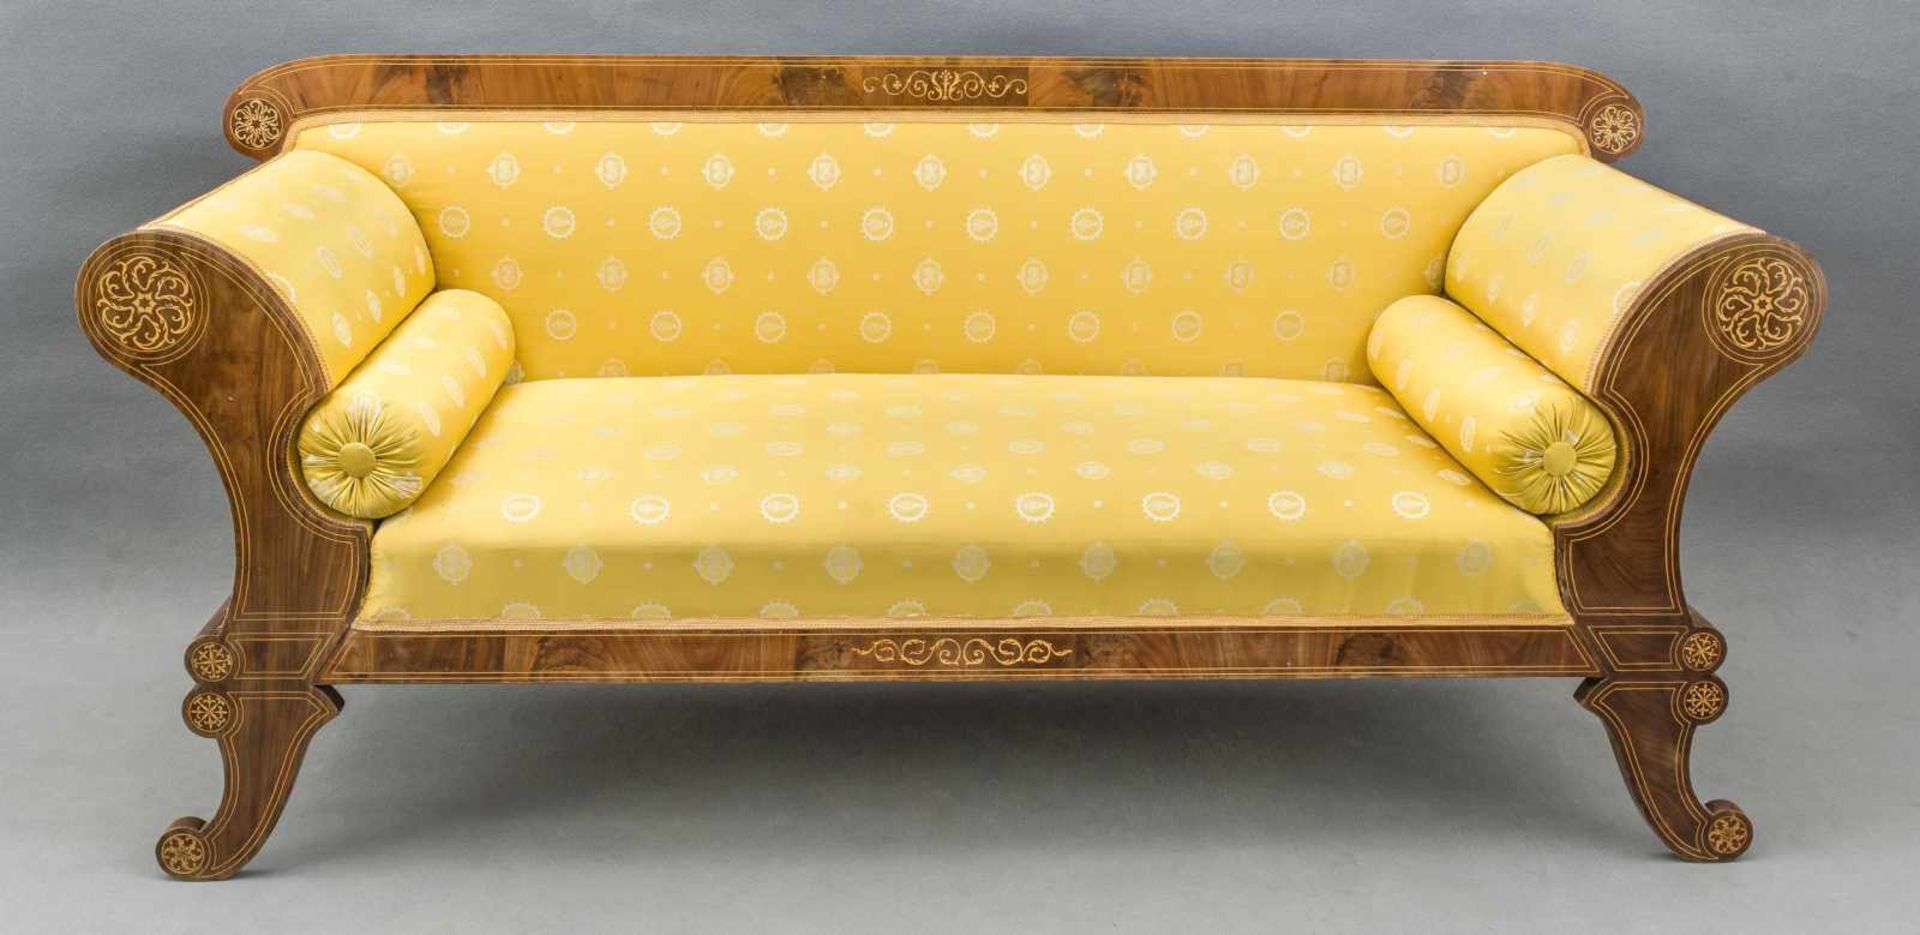 Biedermeier-Sofa, um 1820, Magahoni massiv/furniert, schauseitige Faden- und Floraintarsien aus